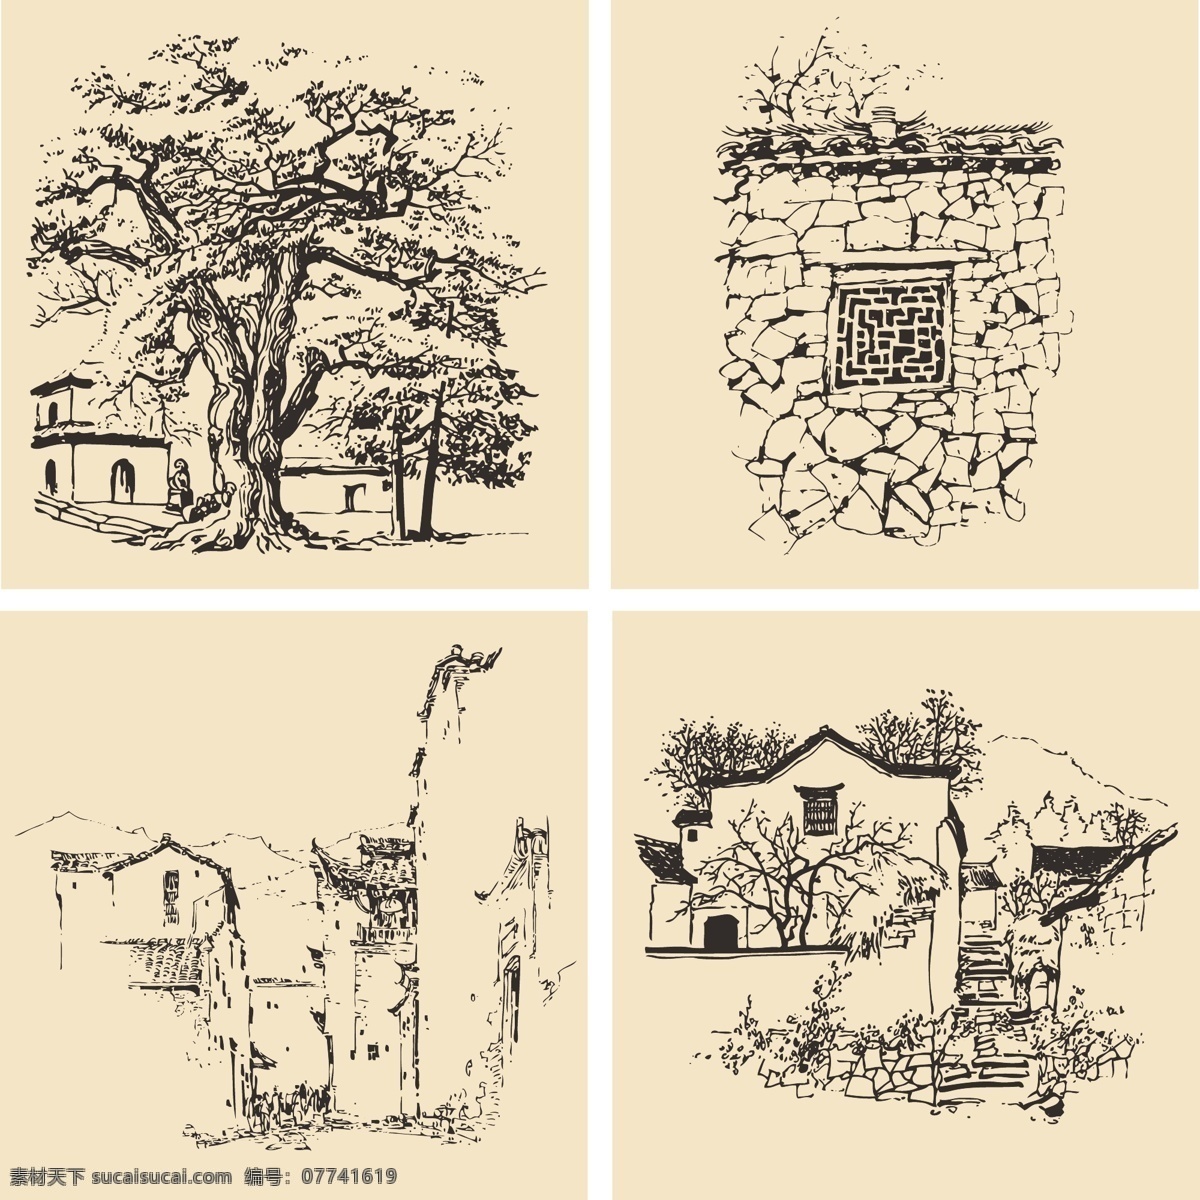 钢笔速写画 钢笔画 速写 素描 手绘 线描 风景 房屋 建筑 树 美术绘画 文化艺术 矢量